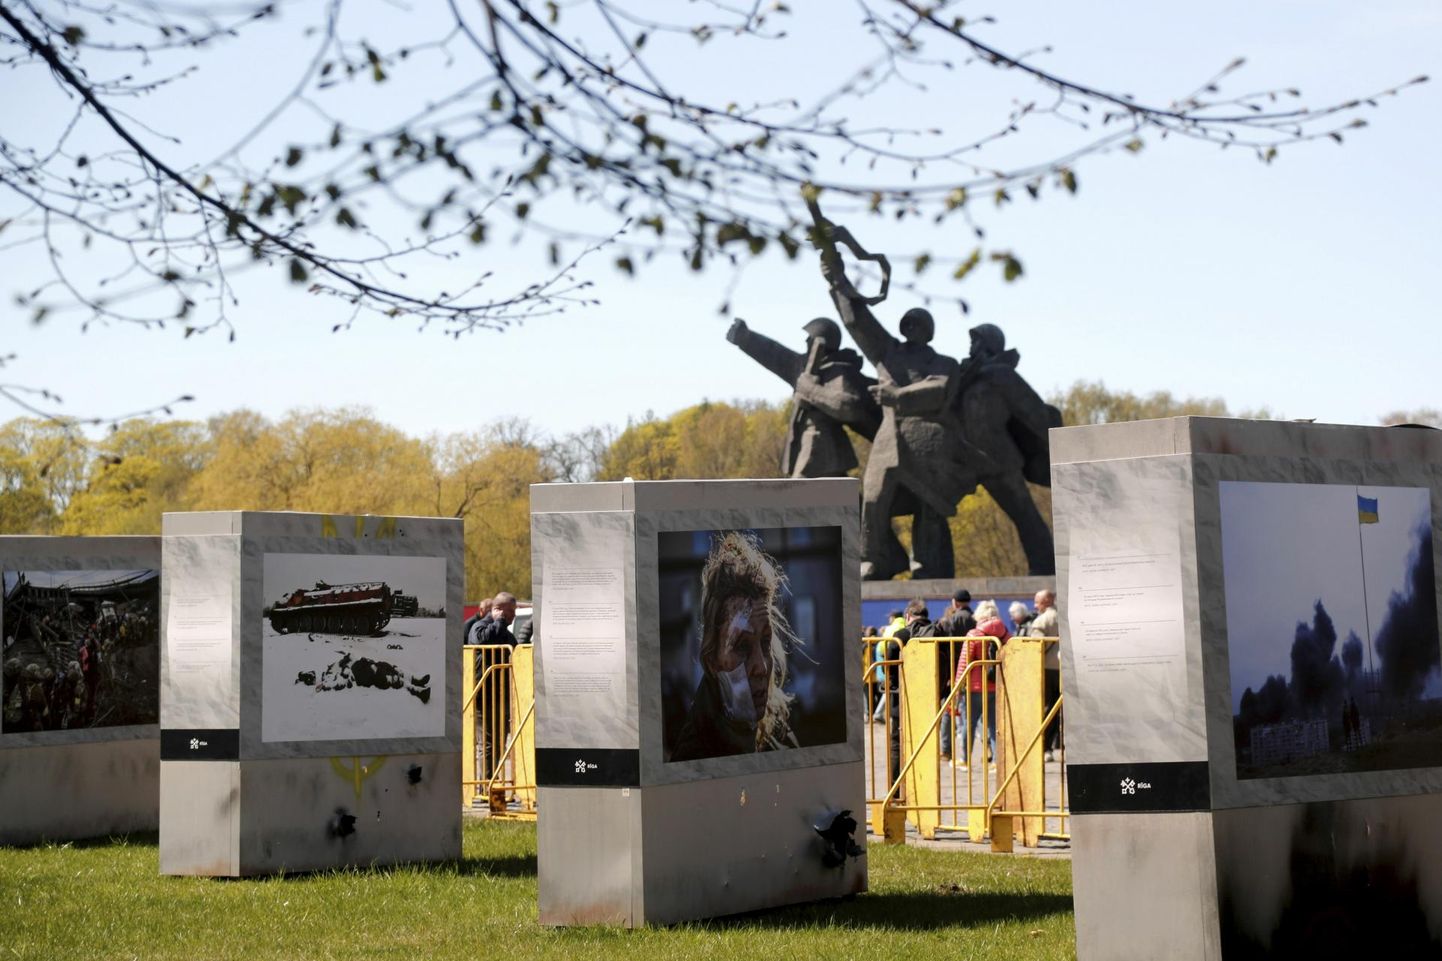 У рисжского монумента "Победа" были установлены фото с кадрами ужасов войны в Украине.